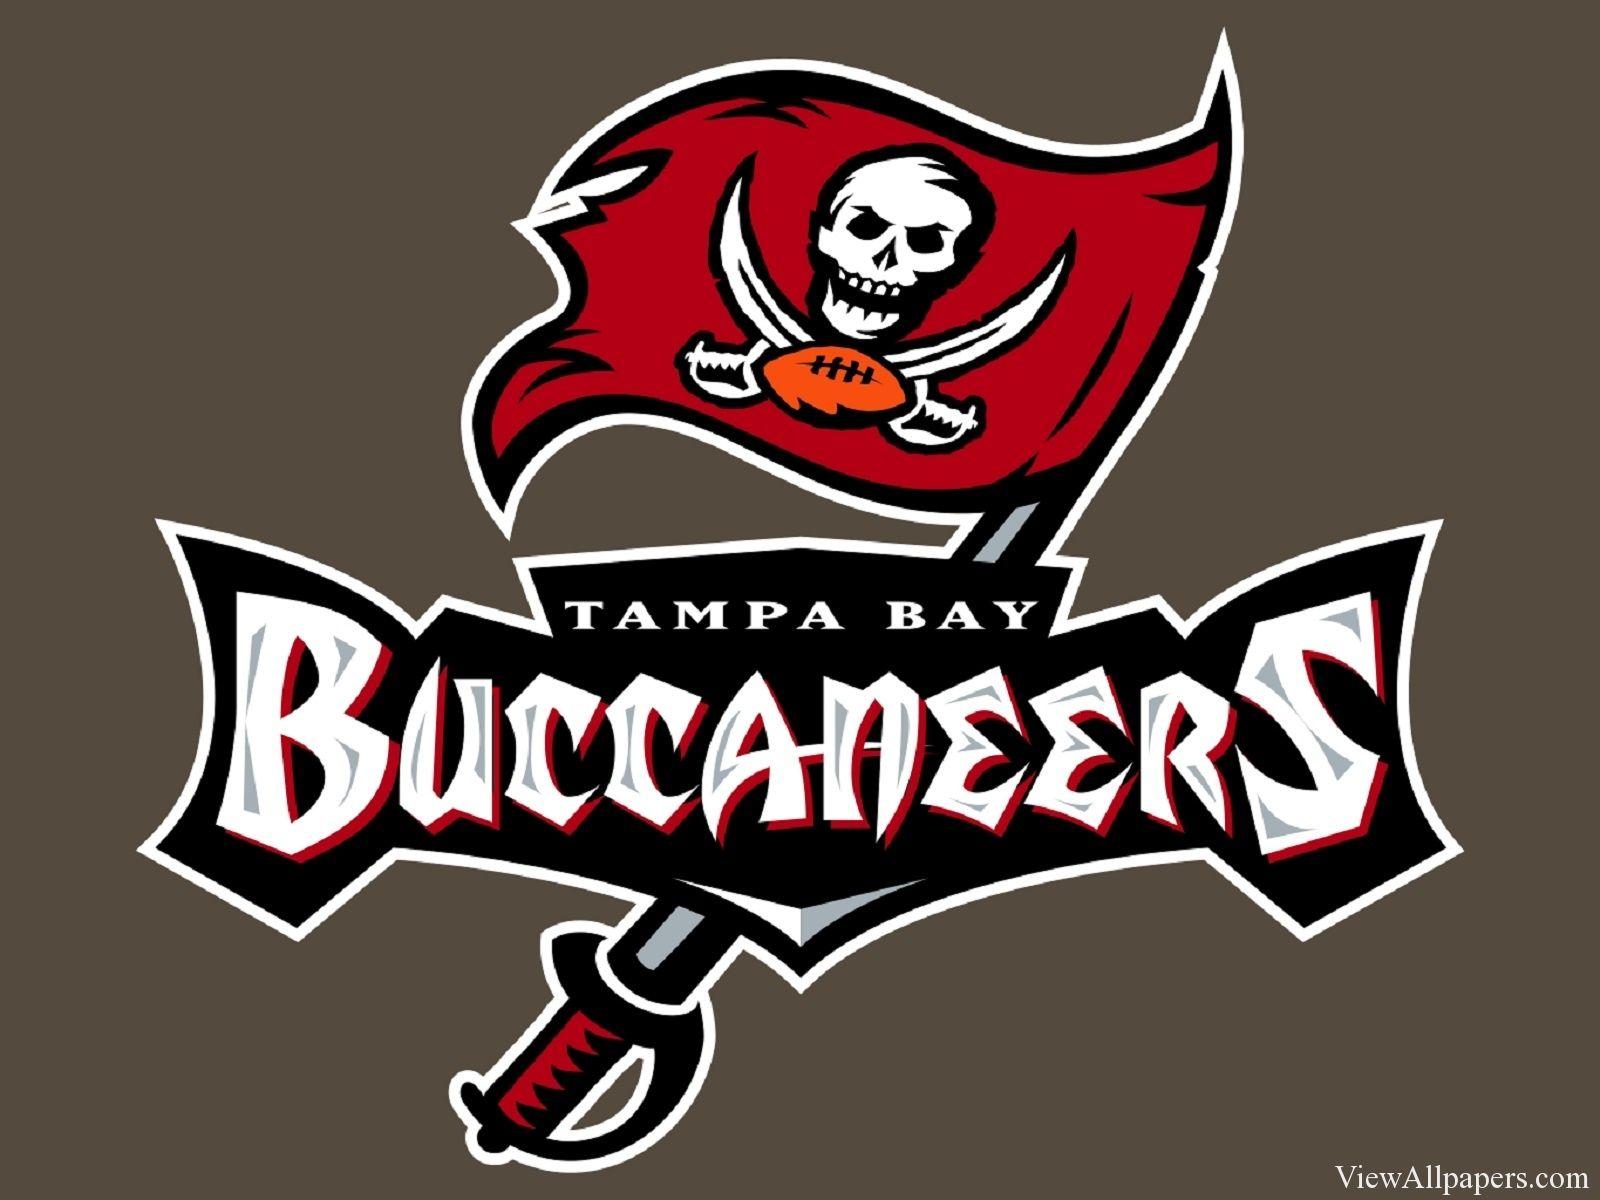 NFL Buccaneers Logo - Tampa Bay Buccaneers Logo. NFL. Tampa Bay Buccaneers, NFL, Tampa